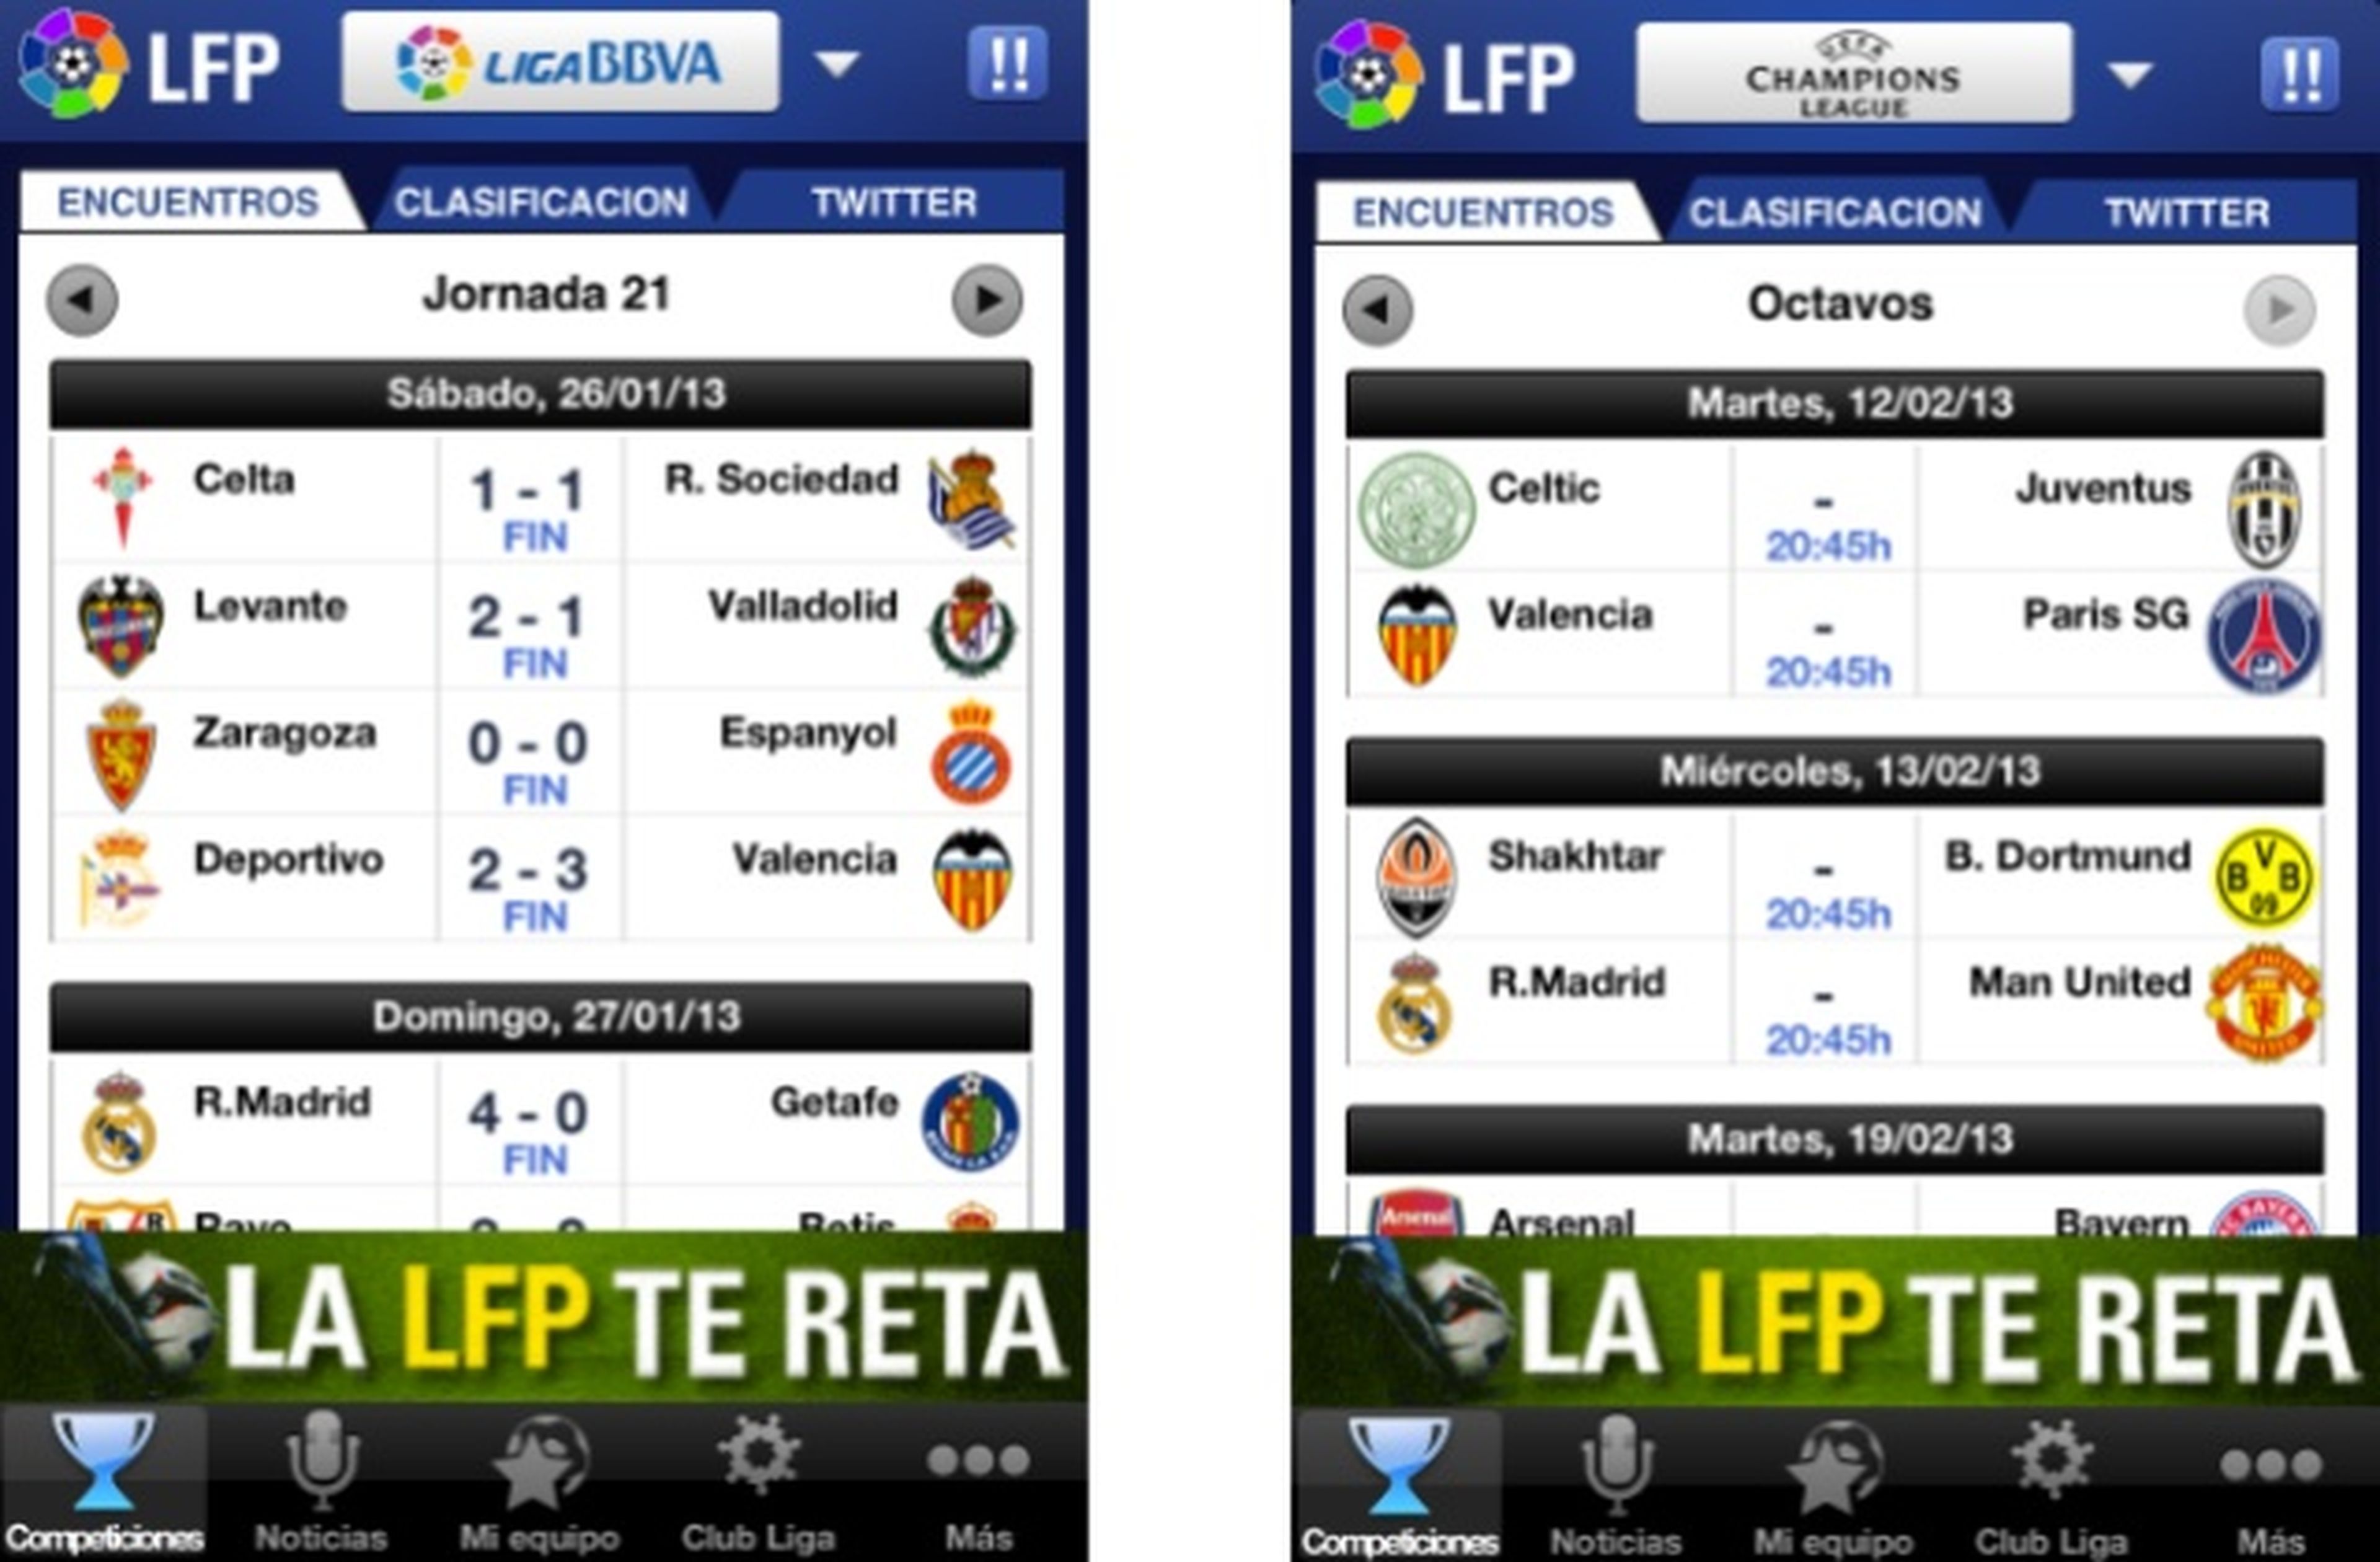 LFP App